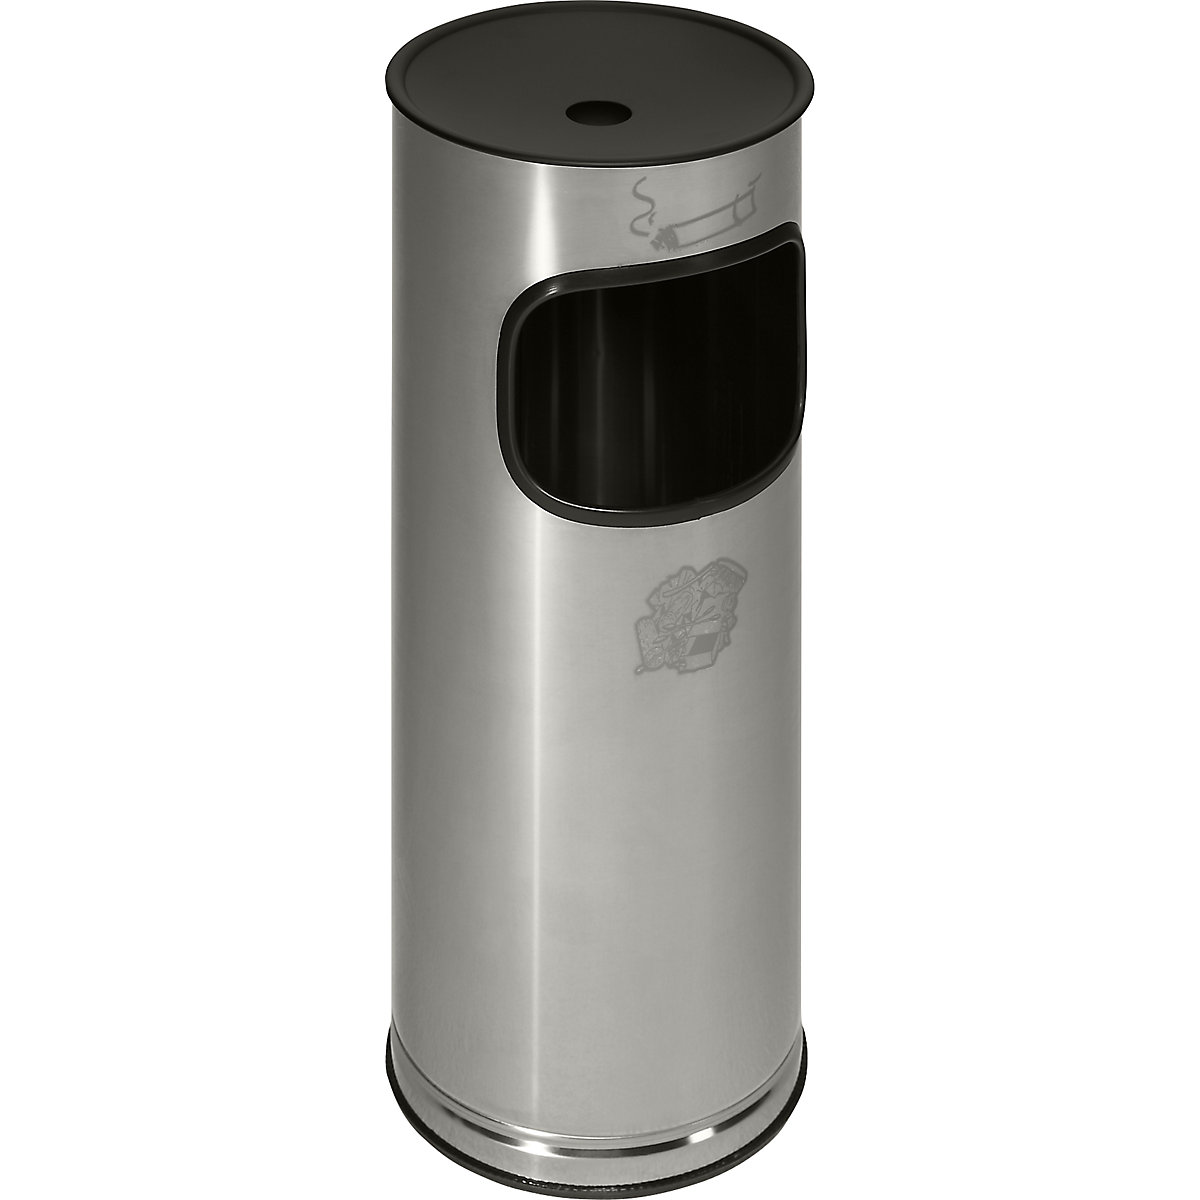 VAR – Combiné cendrier-poubelle anti-feu, inox, capacité 17 l, h x Ø 610 x 250 mm, inox